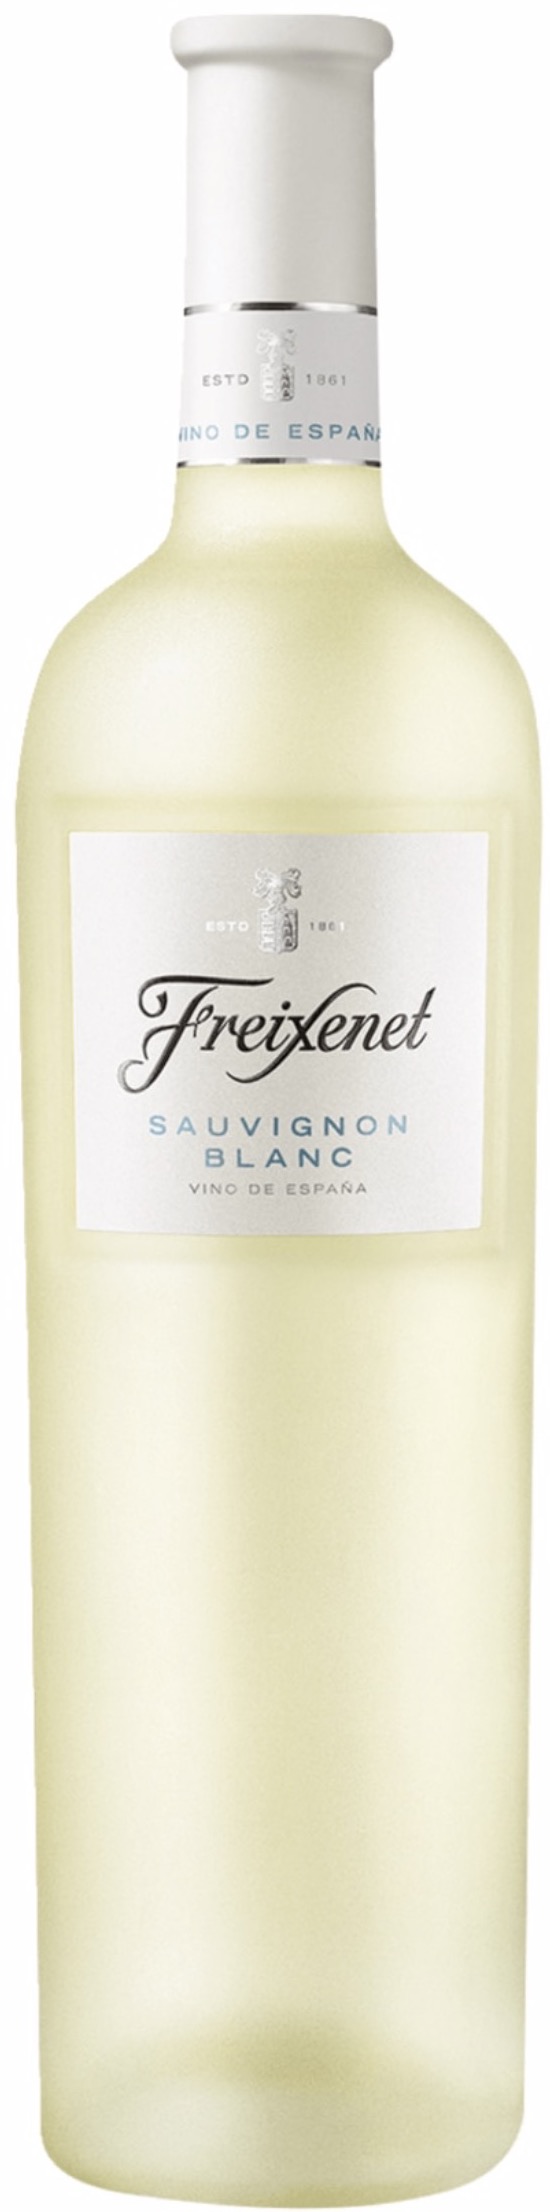 Freixenet Sauvignon Blanc trocken 12,8% vol. 0,75L